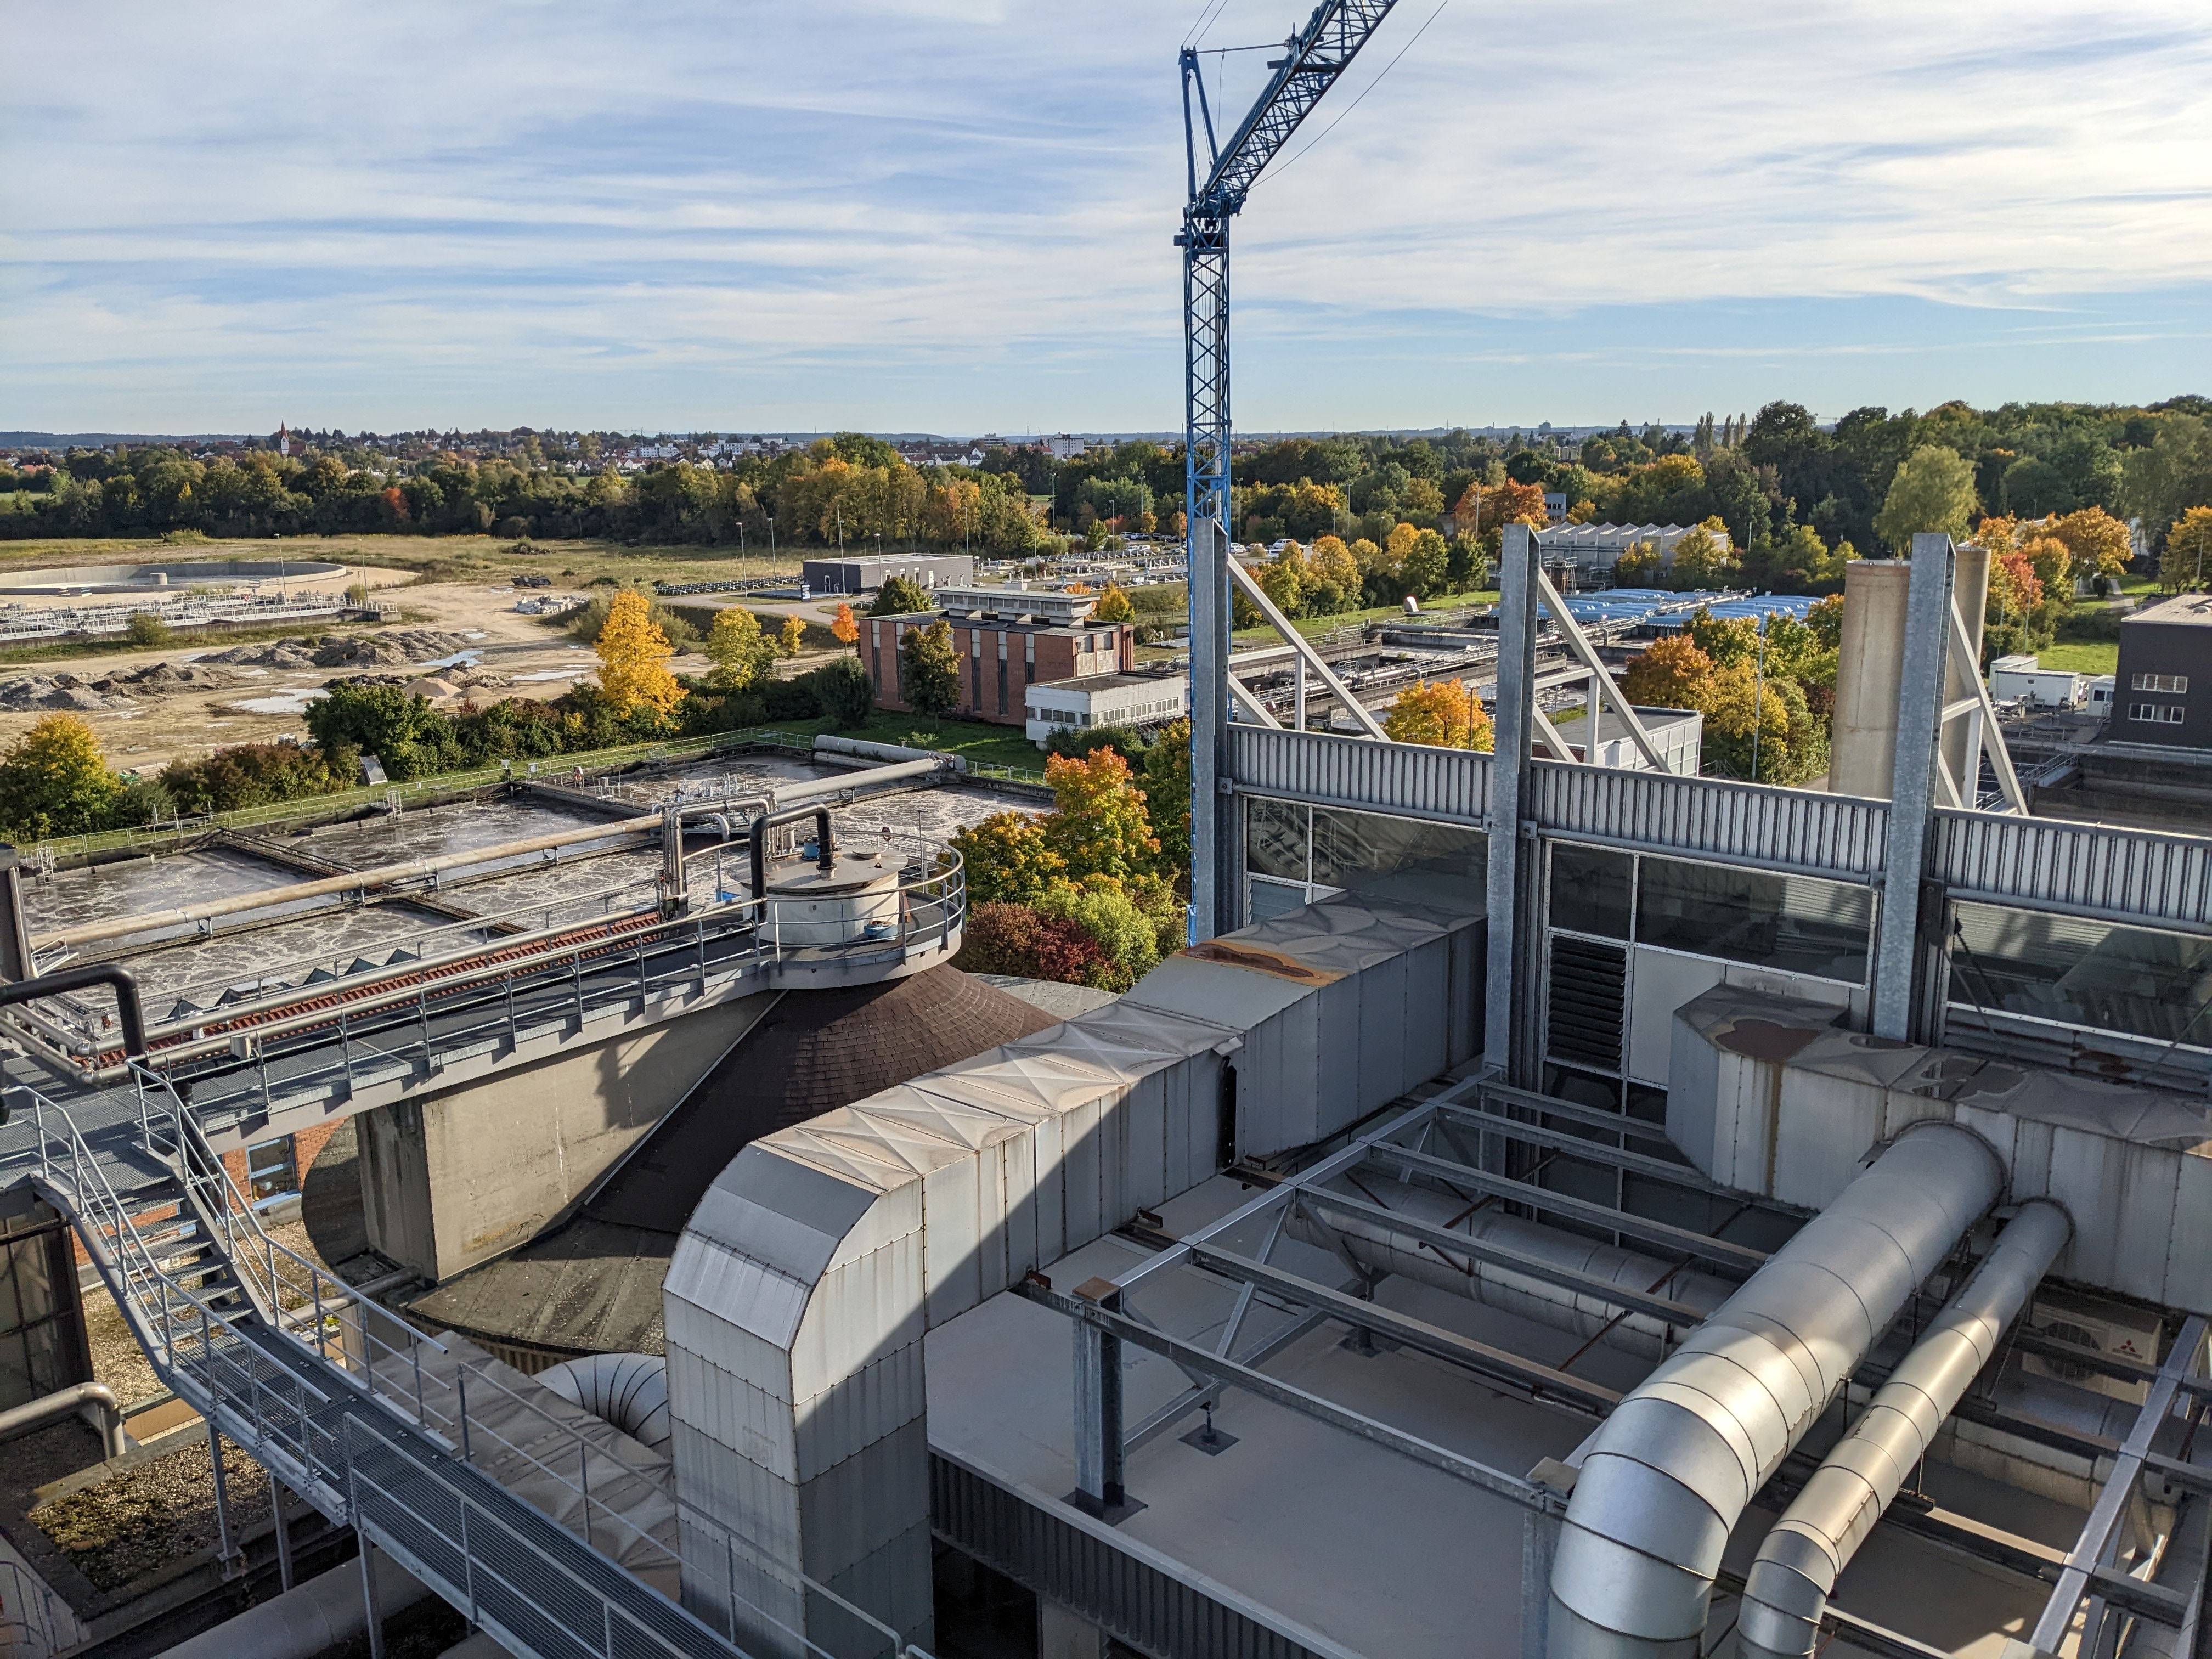 Ulm-Steinhäule wastewater treatment plant.